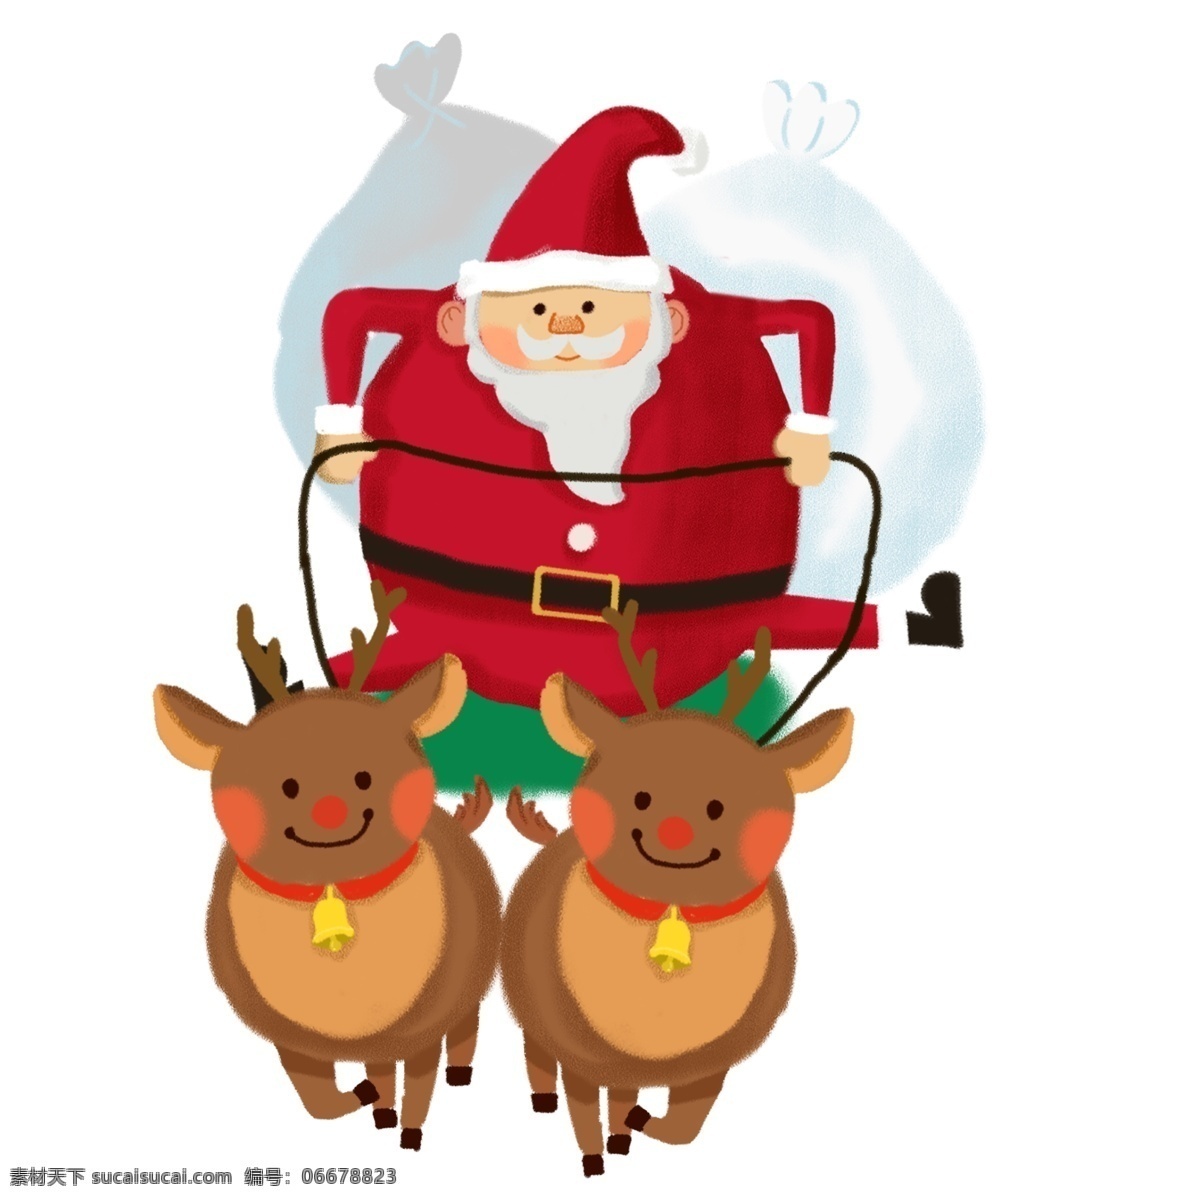 圣诞节 小清 新卡 通 手绘 套 图 戴 圣诞 帽 圣诞老人 背礼物的老人 可爱麋鹿 海报配图 圣诞帽 可爱 欢乐 礼物 麋鹿